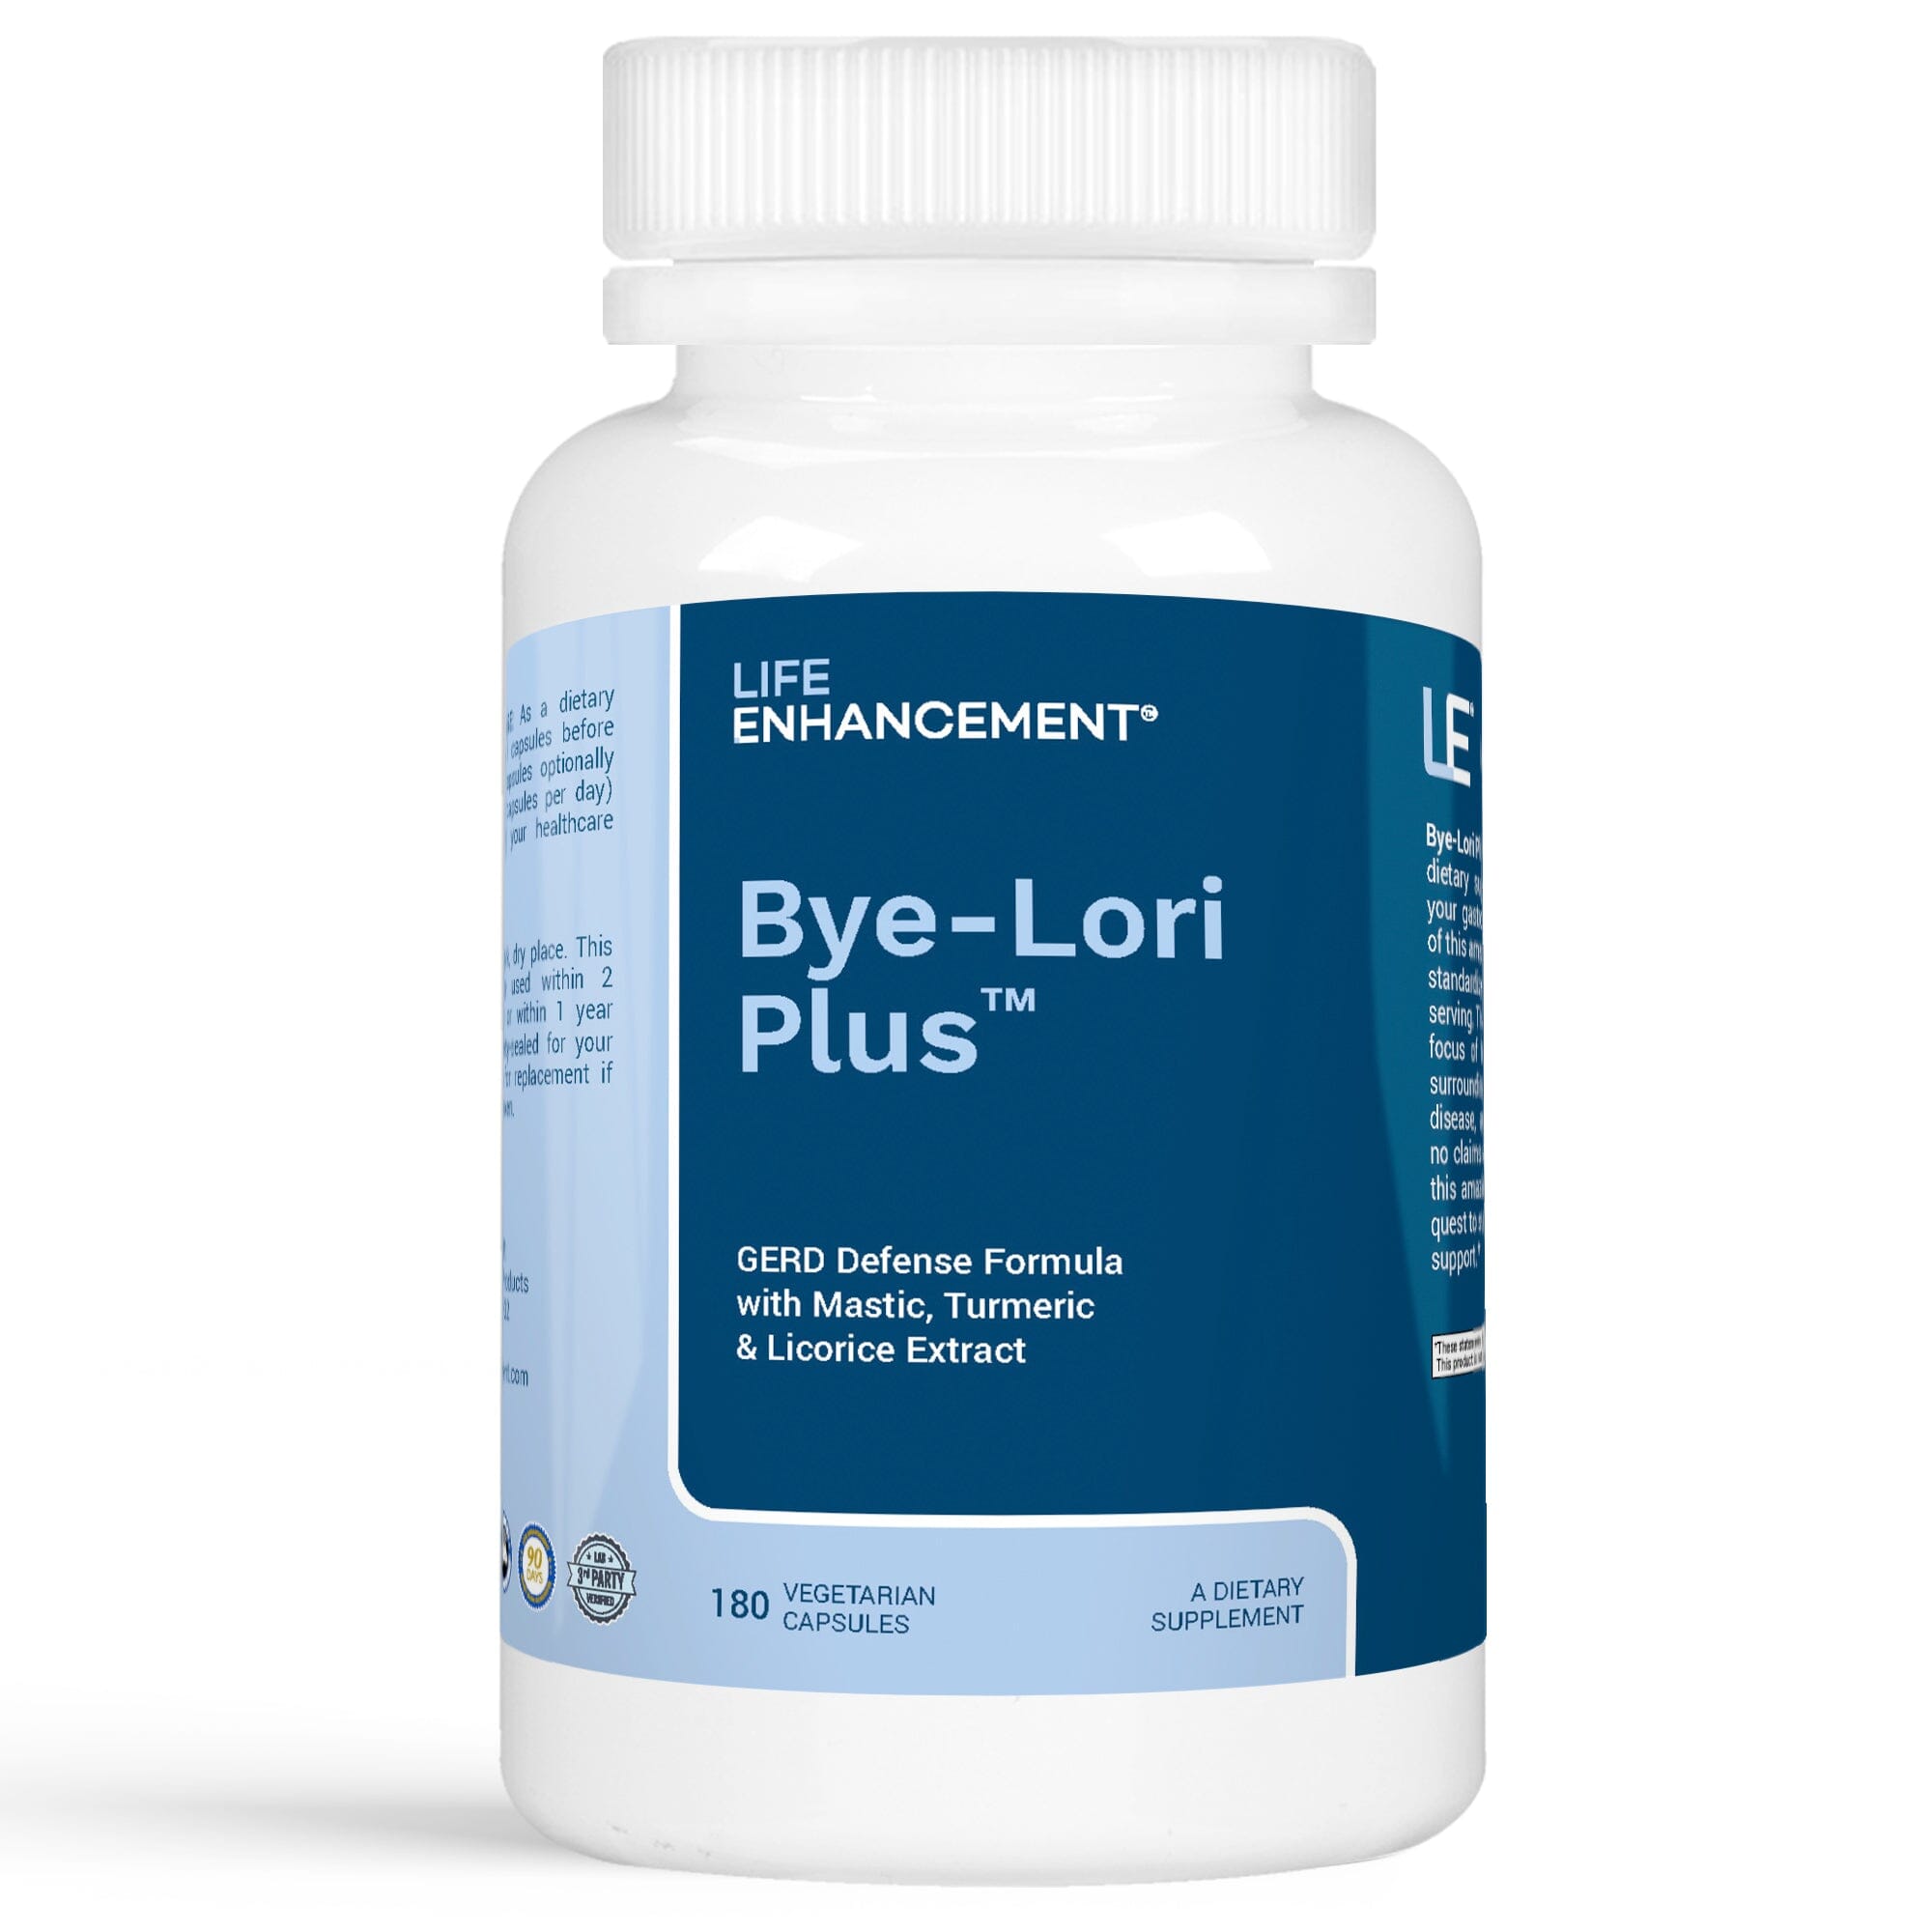 Bye-Lori Plus™